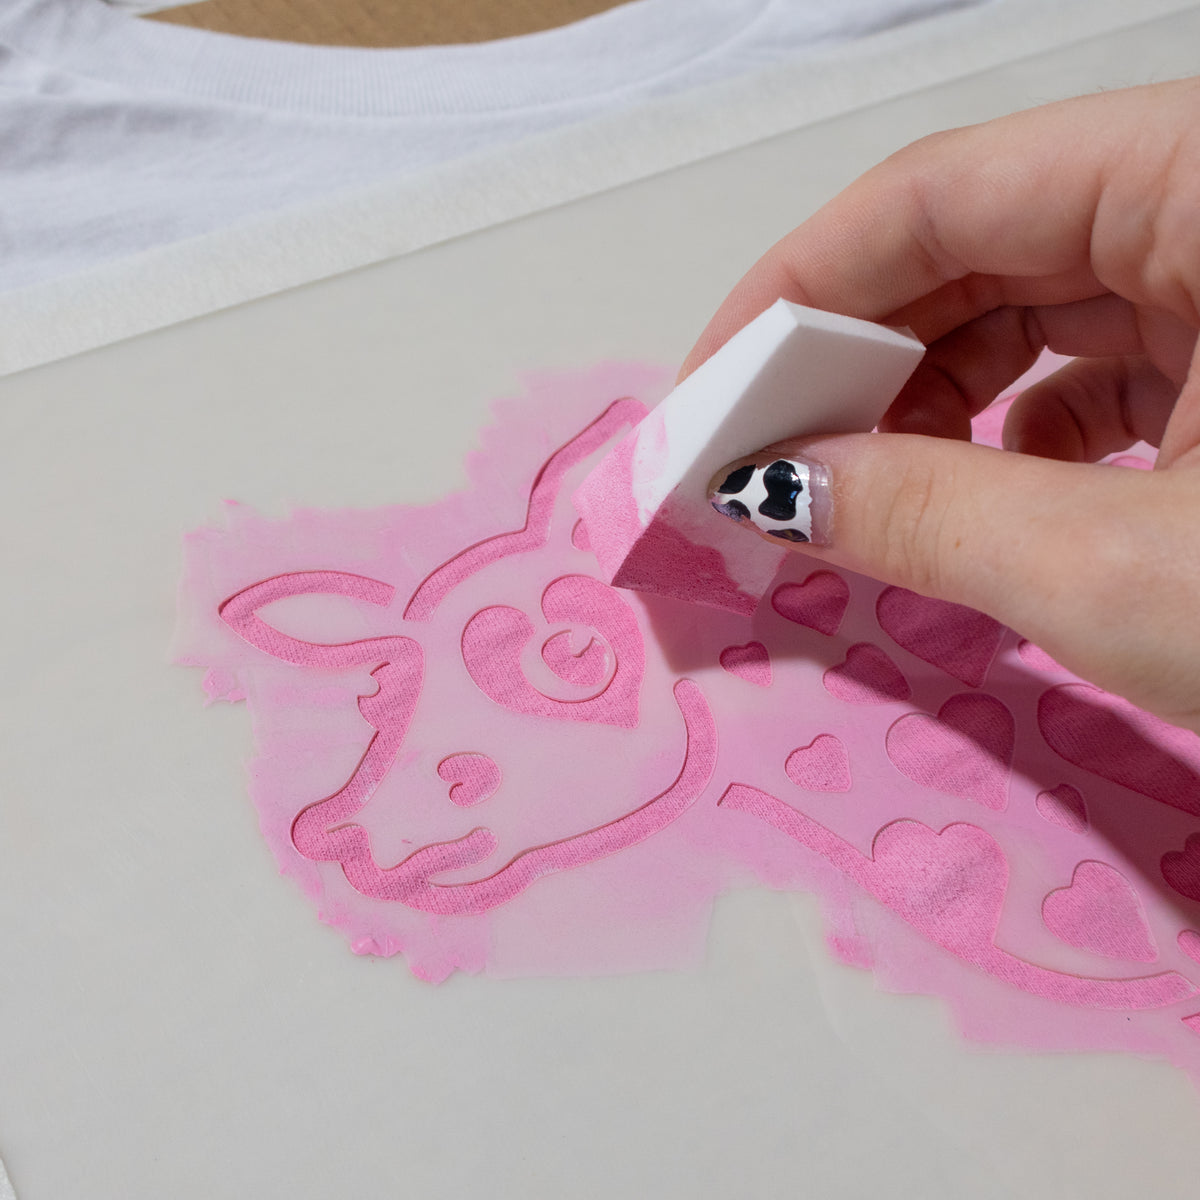 How to Make Stencils - Jordan Vincent 